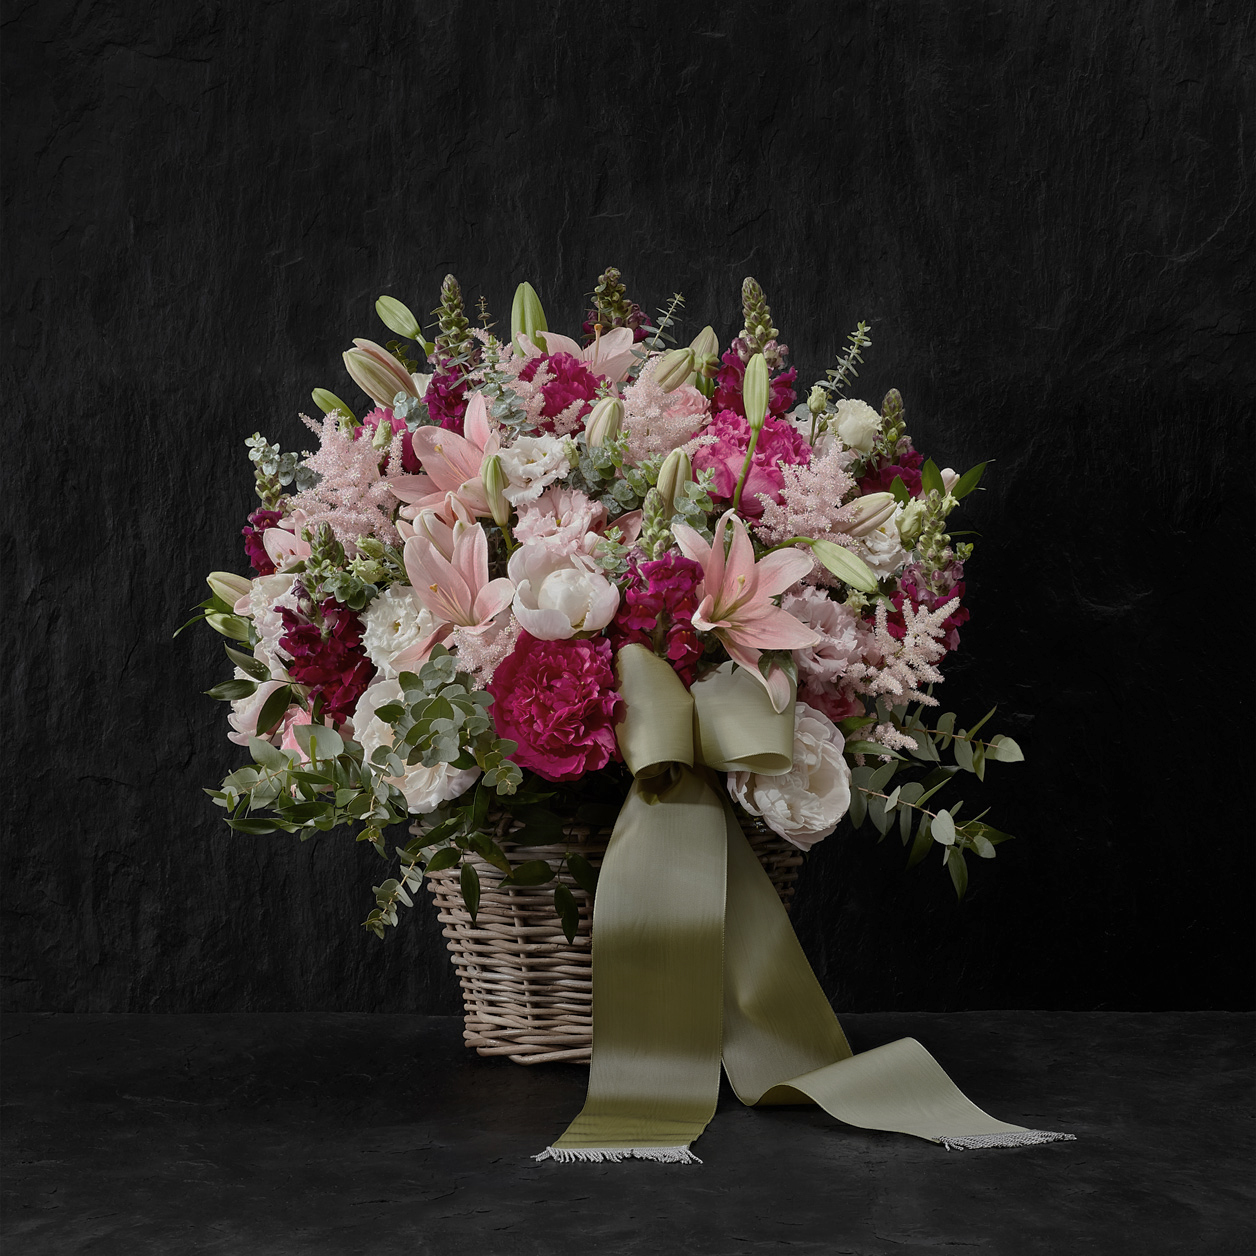 Rosa in Kombination mit kräftigeren Farben ergeben eine sehr schöne Wirkung. Blumenarrangements können ebenfalls mit einer Schleife versehen werden.